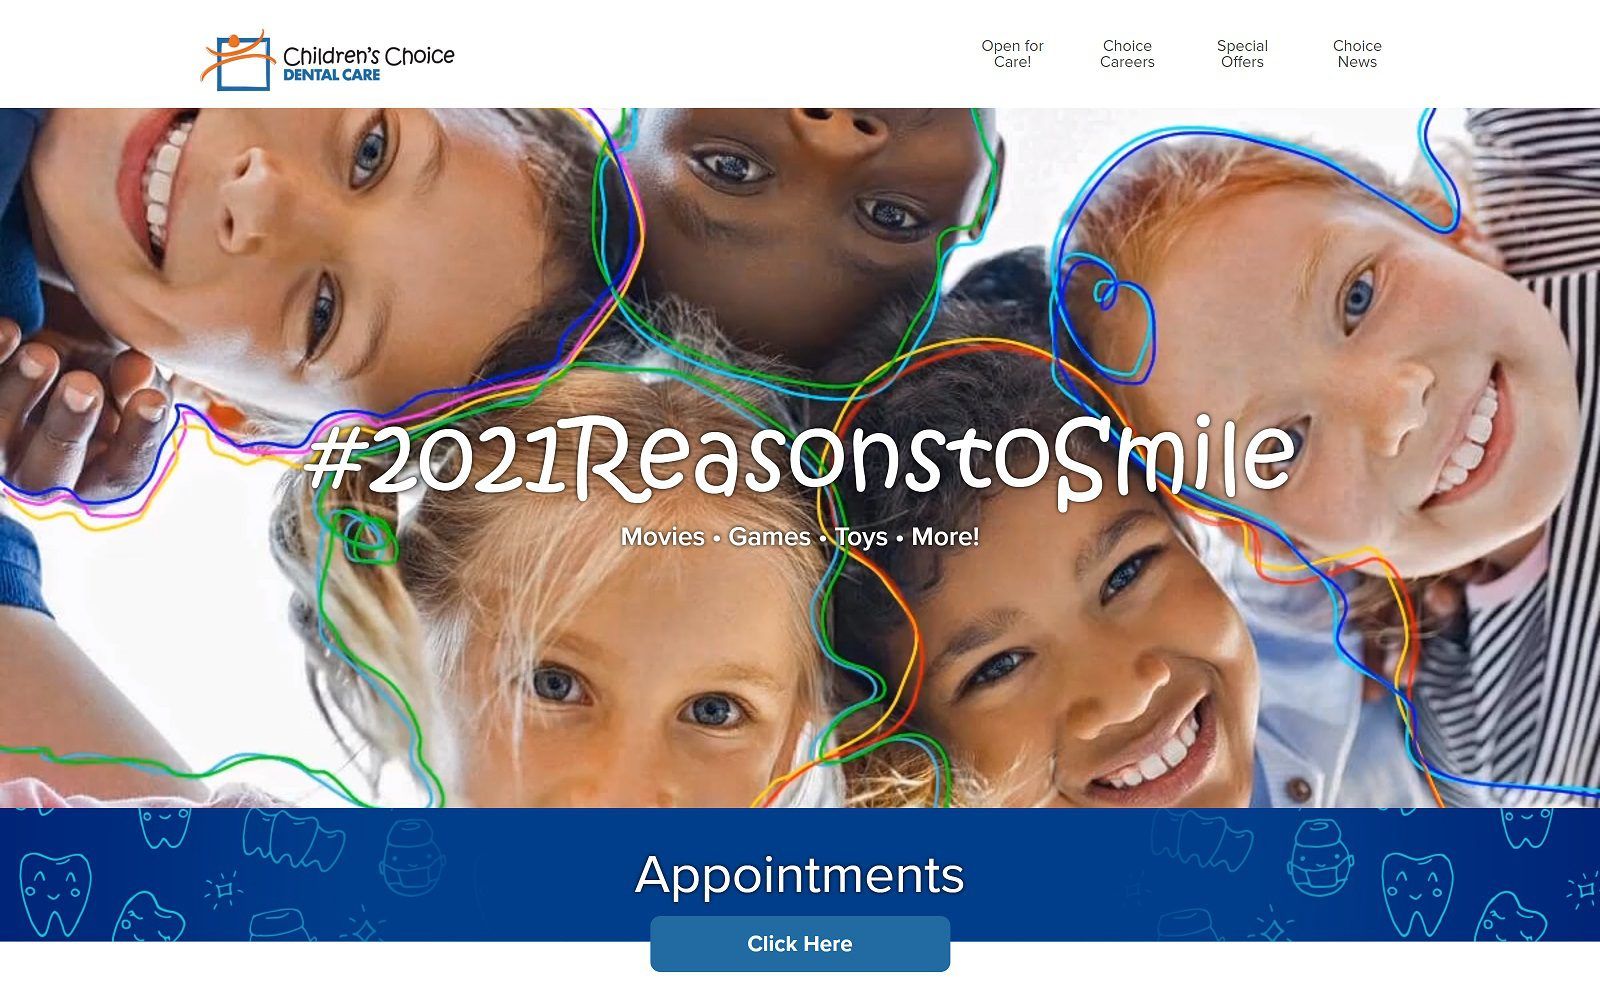 The screenshot children's choice dental care website